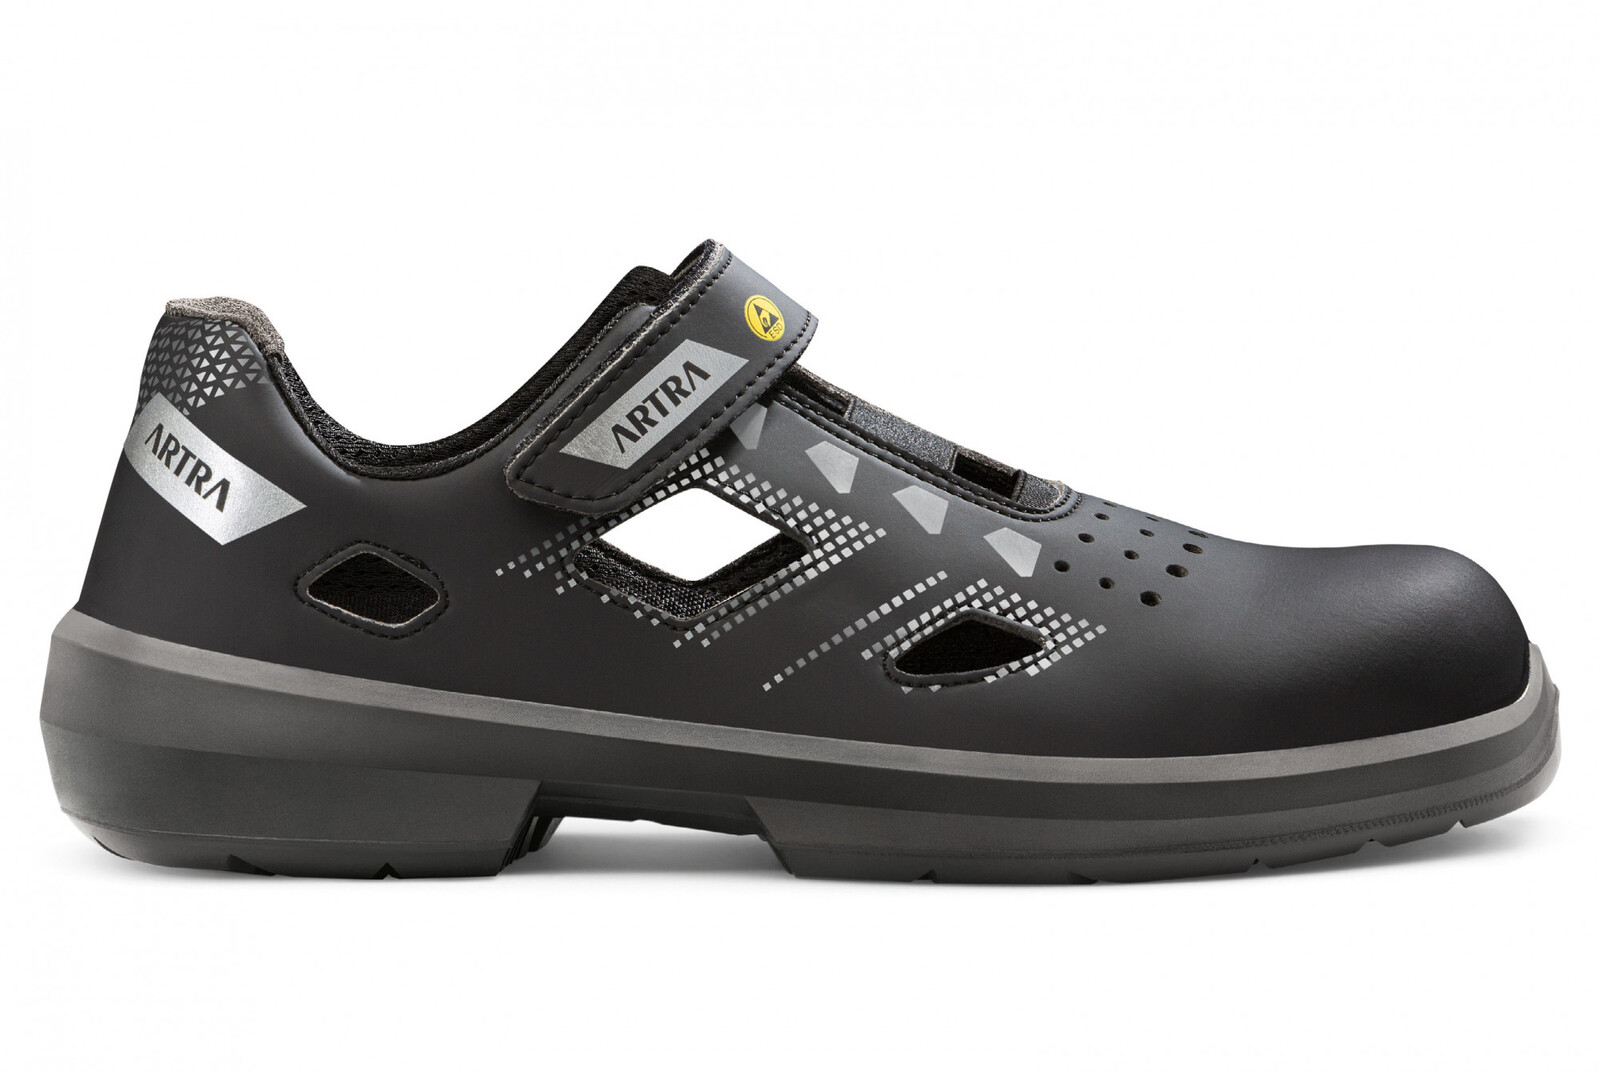 Bezpečnostné sandále Artra Arzo 805 676560 S1 SRC ESD MF - veľkosť: 48, farba: čierna/sivá